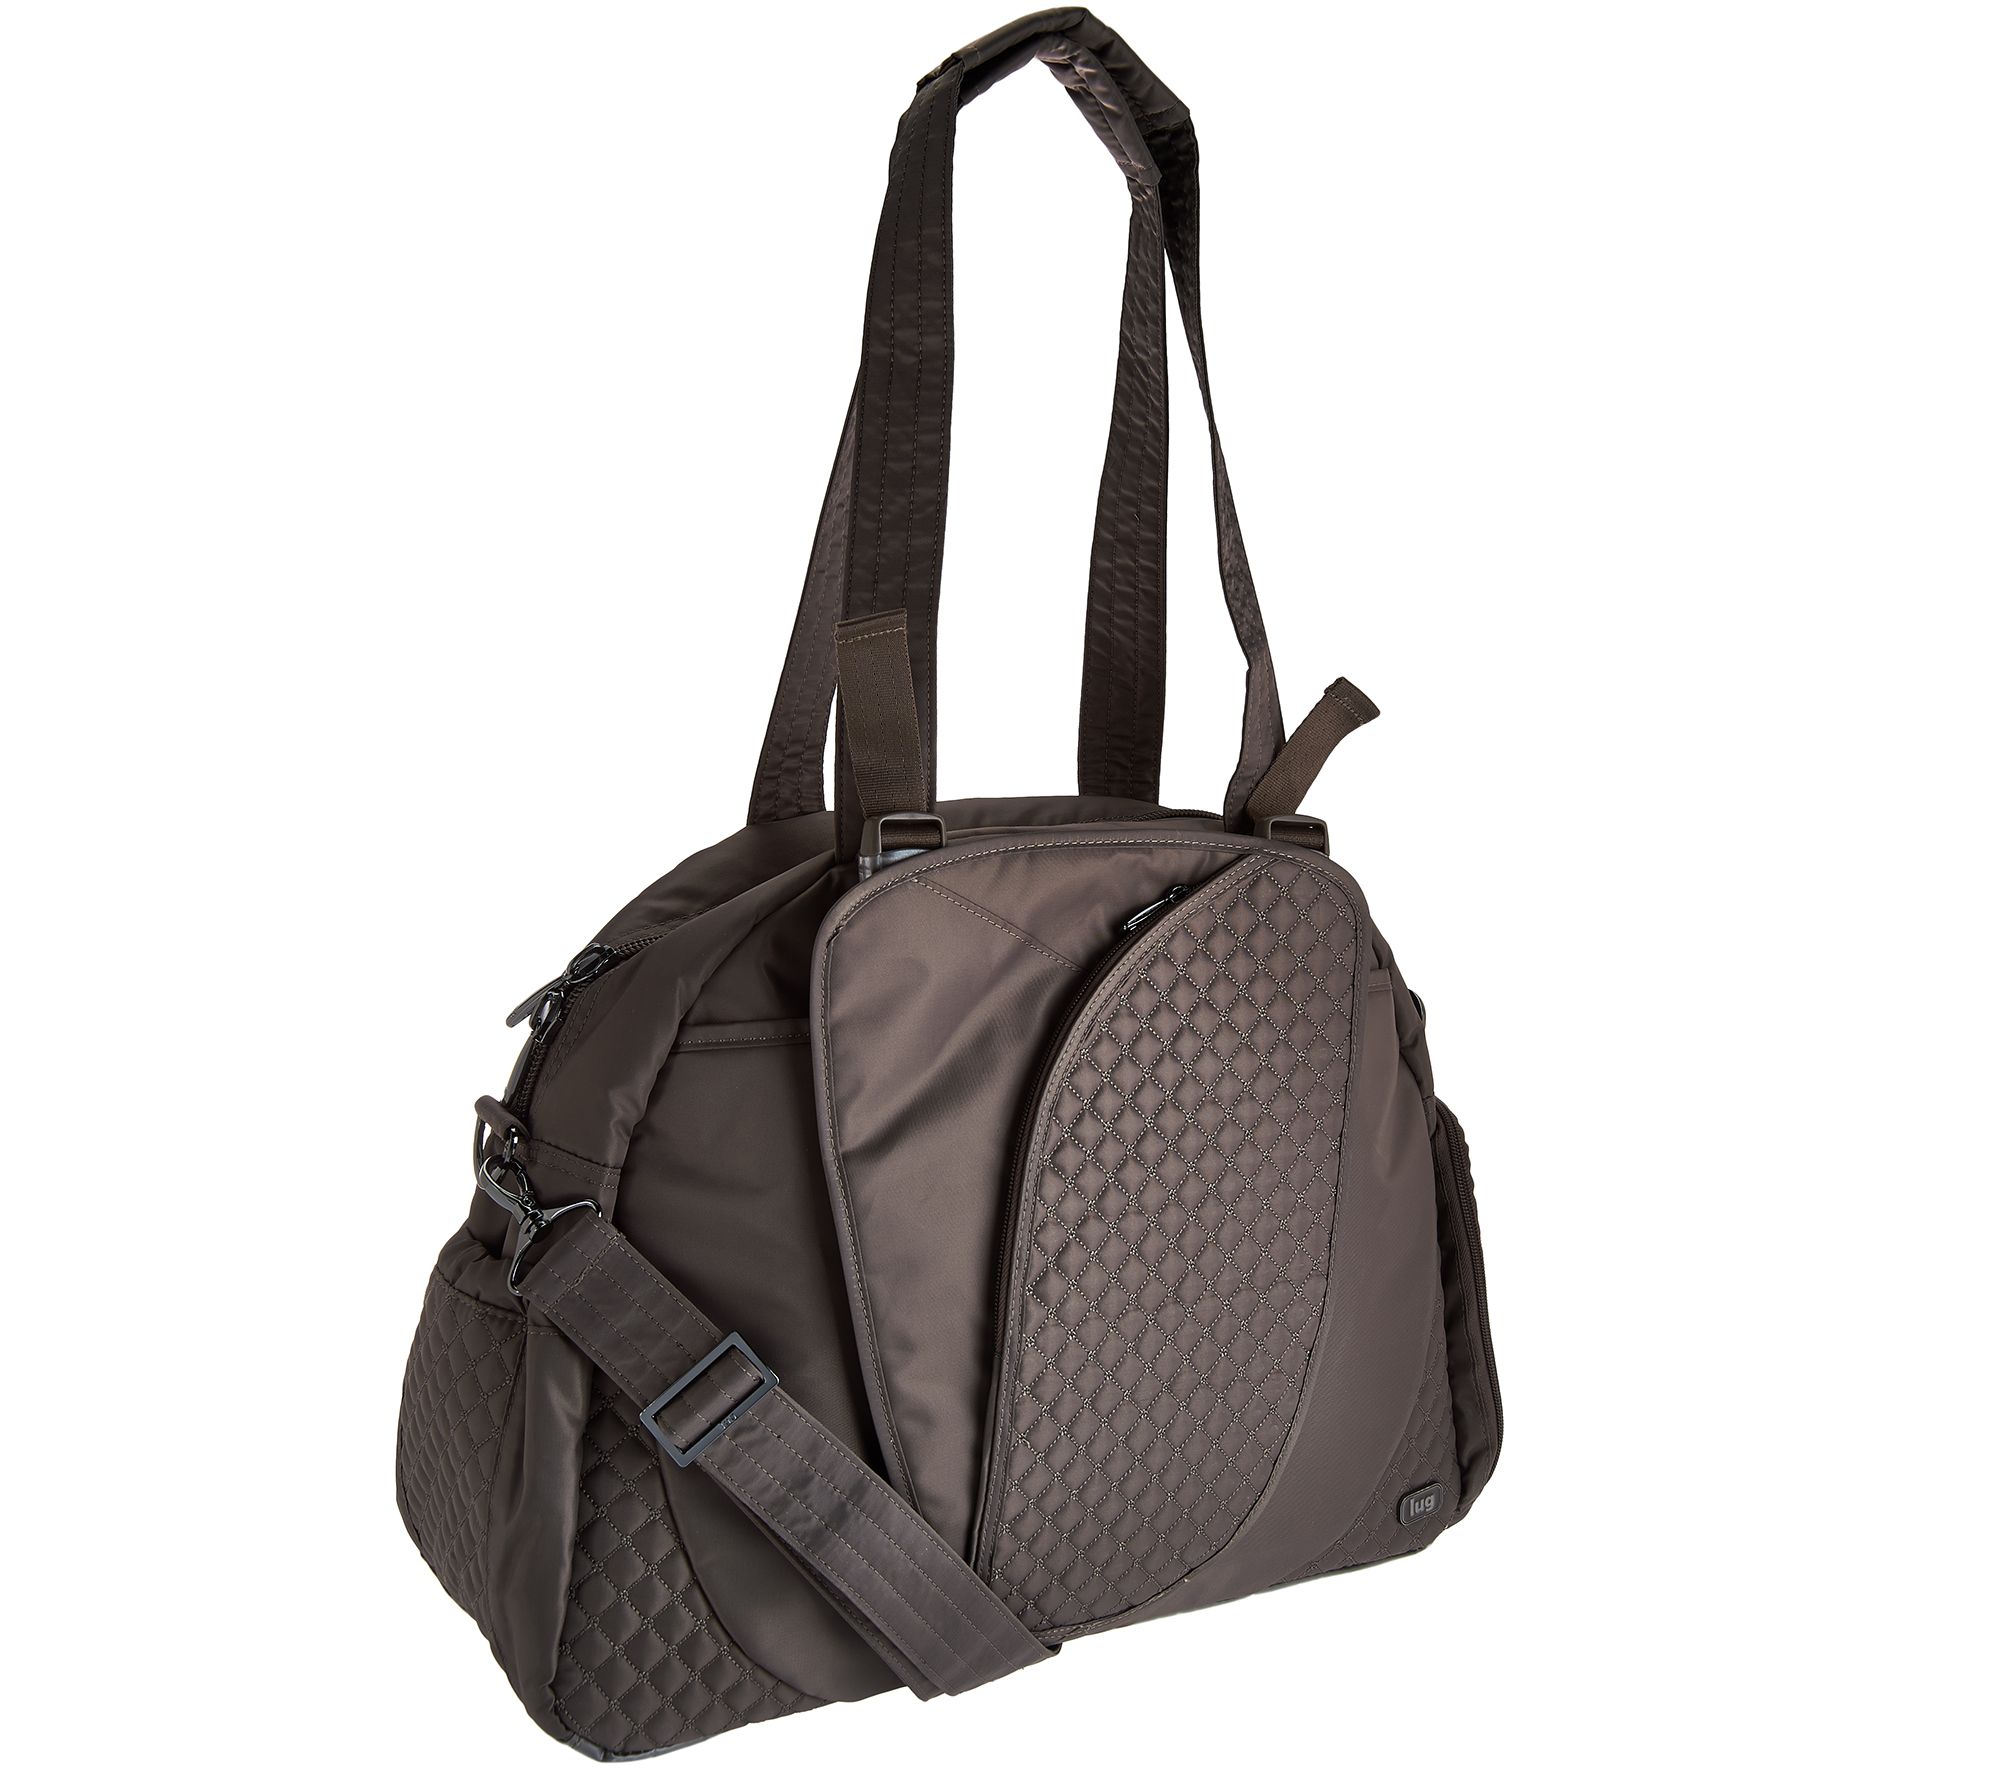 Lug Travel Bags for Women — Handbags & Luggage — nrd.kbic-nsn.gov